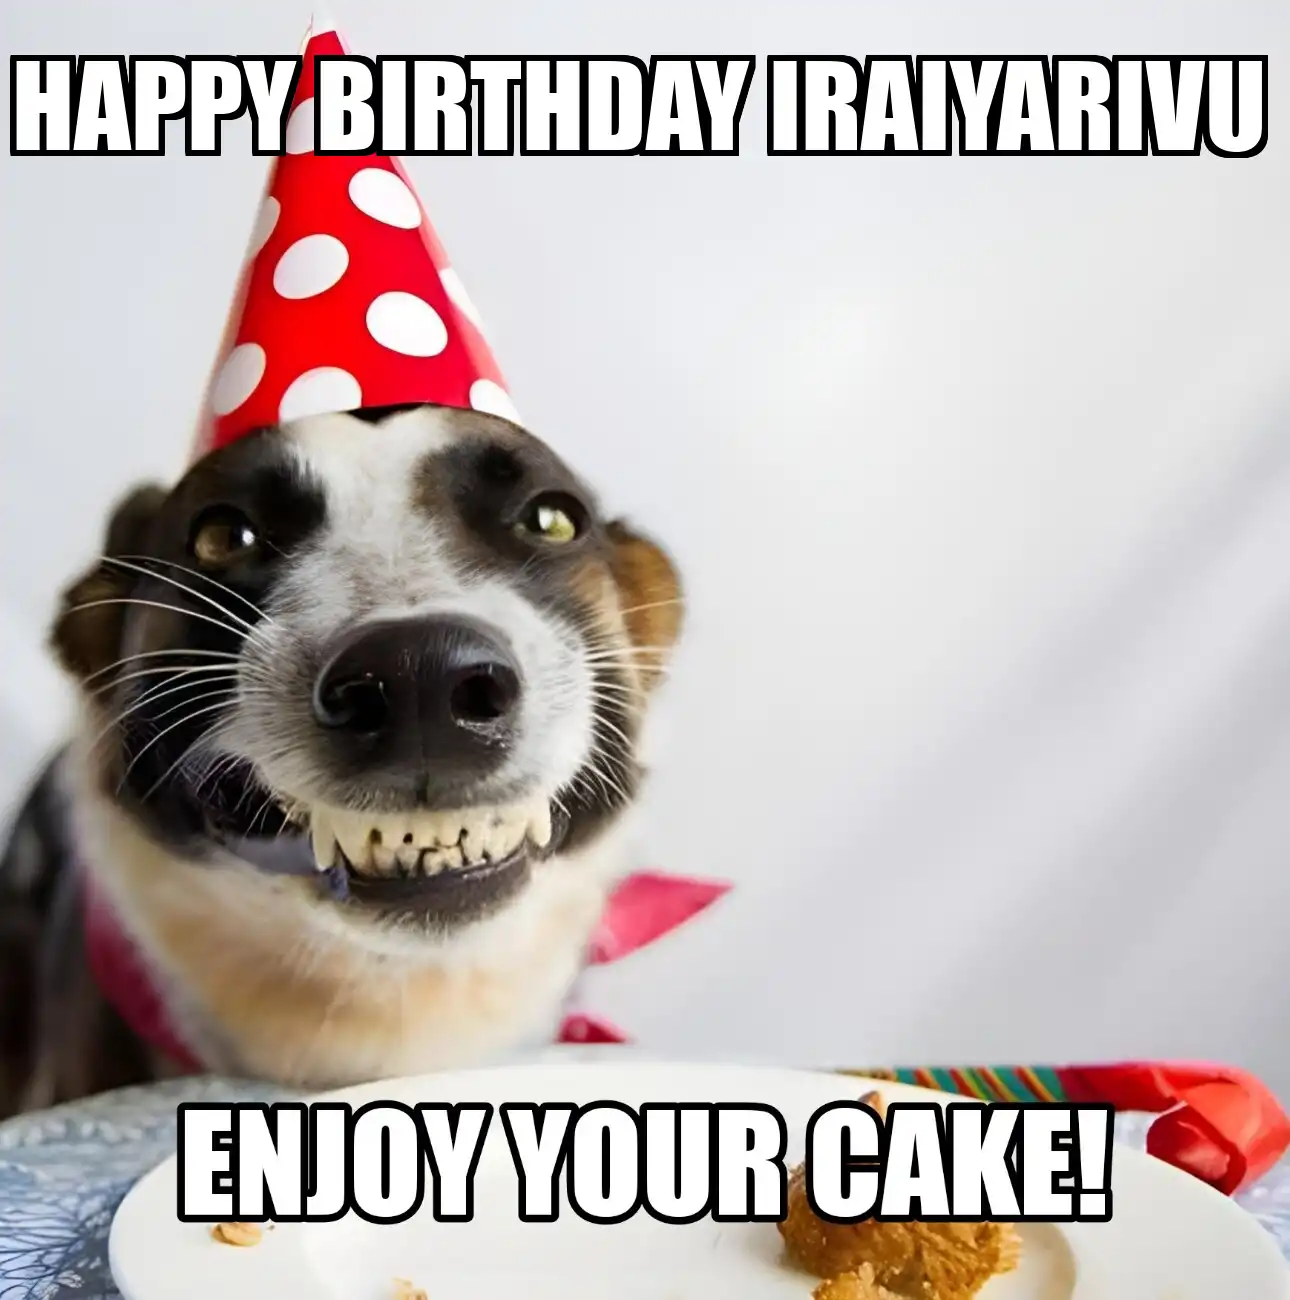 Happy Birthday Iraiyarivu Enjoy Your Cake Dog Meme